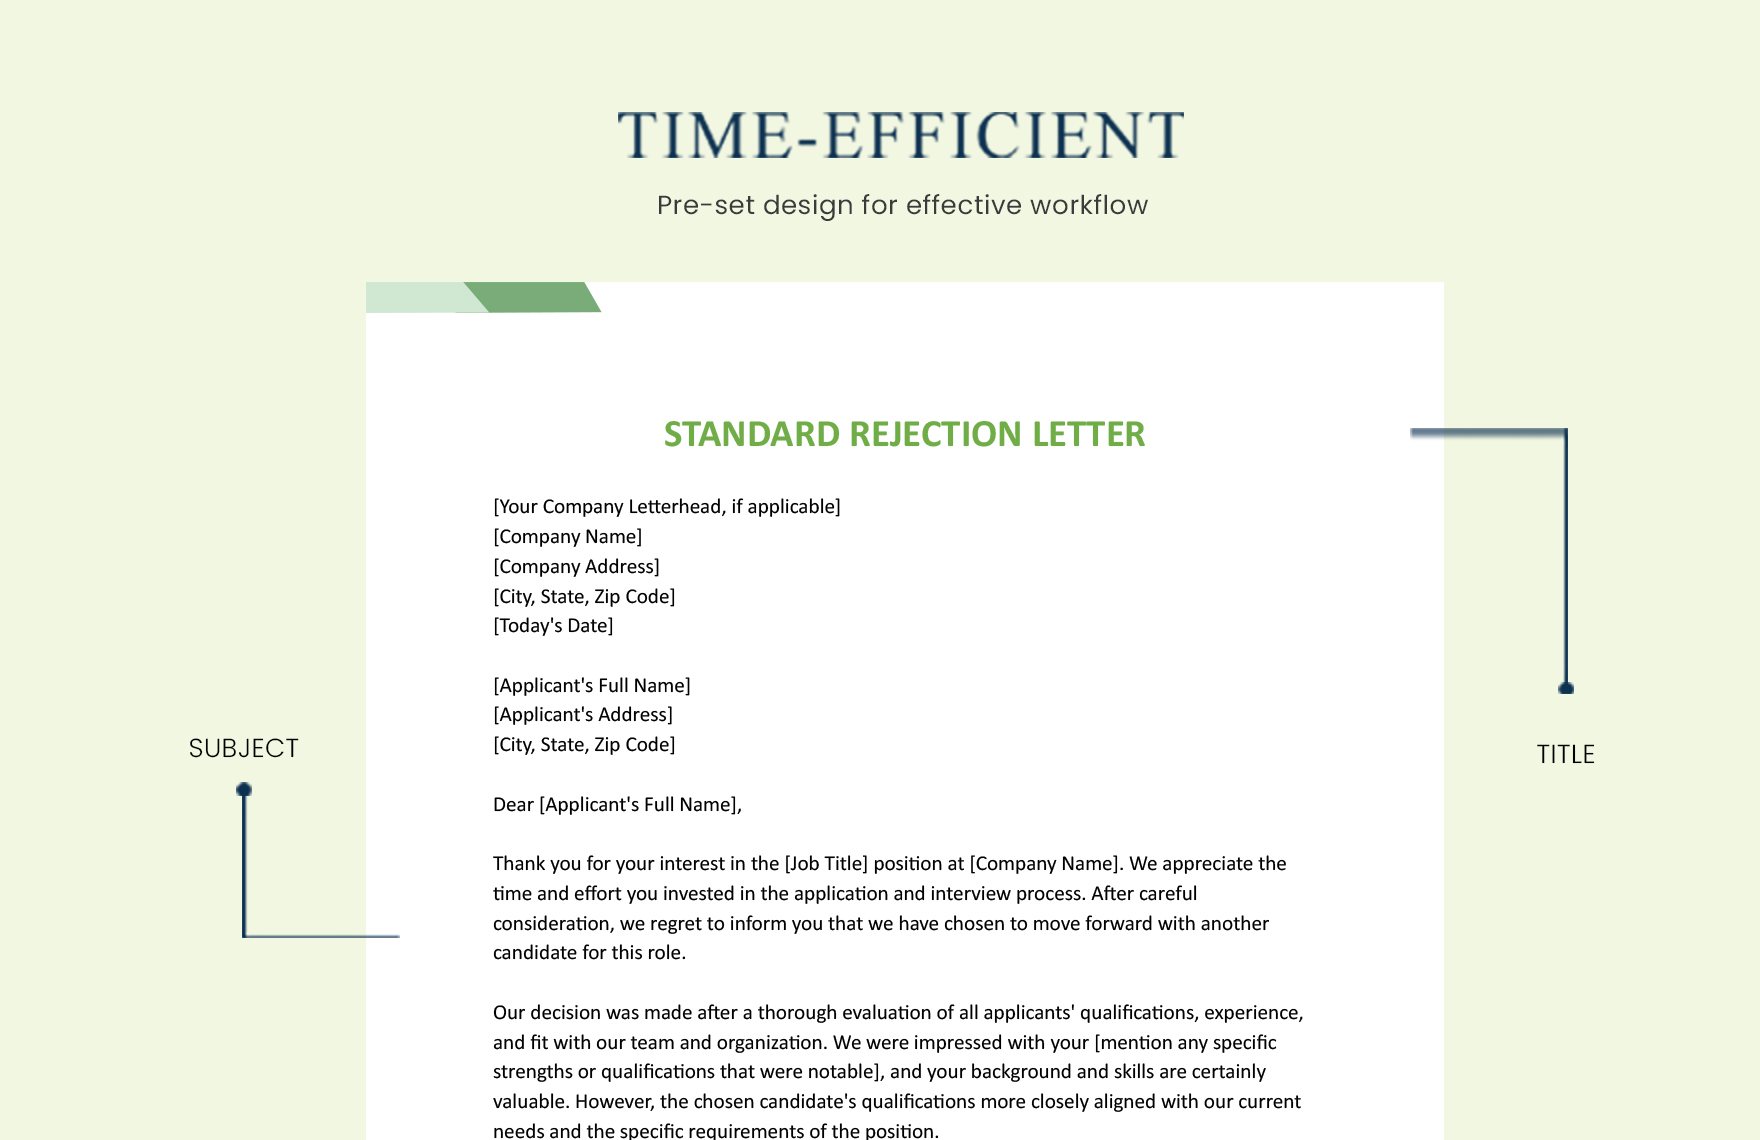 Standard Rejection Letter